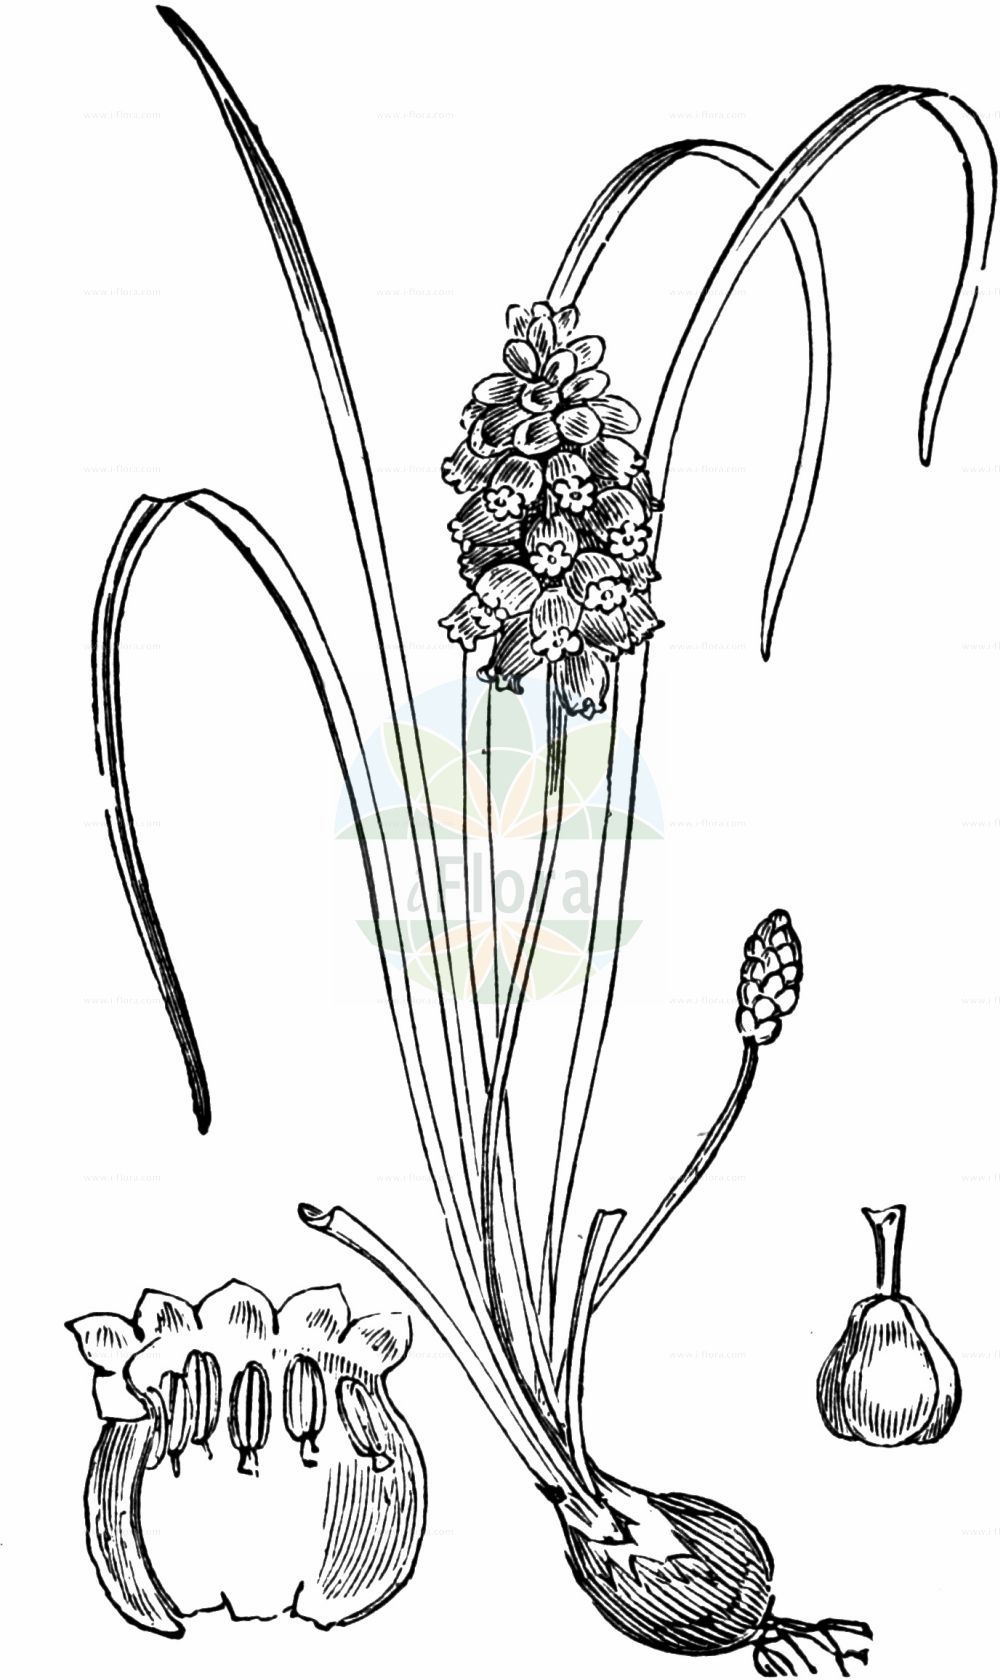 Historische Abbildung von Muscari neglectum (Weinbergs-Traubenhyazinthe - Grape-hyacinth). Das Bild zeigt Blatt, Bluete, Frucht und Same. ---- Historical Drawing of Muscari neglectum (Weinbergs-Traubenhyazinthe - Grape-hyacinth). The image is showing leaf, flower, fruit and seed.(Muscari neglectum,Weinbergs-Traubenhyazinthe,Grape-hyacinth,Botryanthus atlanticus,Botryanthus breviscapus,Botryanthus granatensis,Botryanthus mandraliscae,Botryanthus mordoanus,Botryanthus neglectus,Botryanthus odorus,Botryanthus racemosus,Botryanthus saulii,Botryanthus speciosus,Botryanthus strangwaysii,Etheiranthus jacquinii,Eubotrys odorata,Hyacinthus juncifolius,Hyacinthus neglectus,Hyacinthus racemosus,Leopoldia neumayeri,Muscari atlanticum,Muscari bootanensis,Muscari breviscapum,Muscari bucharicum,Muscari compactum,Muscari dolioliforme,Muscari elwesii,Muscari flaccidum,Muscari fontqueri,Muscari granatense,Muscari grandifolium,Muscari grossheimii,Muscari letourneuxii,Muscari leucostomum,Muscari macranthum,Muscari mordoanum,Muscari neglectum,Muscari neumayeri,Muscari nivale,Muscari odoratum,Muscari populeum,Muscari racemosum,Muscari skorpili,Muscari speciosum,Muscari strangwaysii,Muscari szovitsianum,Muscari vandasii,Scilla suaveolens,Weinbergs-Traubenhyazinthe,Grape-hyacinth,Starch Grape Hyacinth,Common Grape Hyacinth,Muscari,Traubenhyazinthe,Grape Hyacinth,Asparagaceae,Spargelgewächse,Asparagus family,Blatt,Bluete,Frucht,Same,leaf,flower,fruit,seed,Fitch et al. (1880))